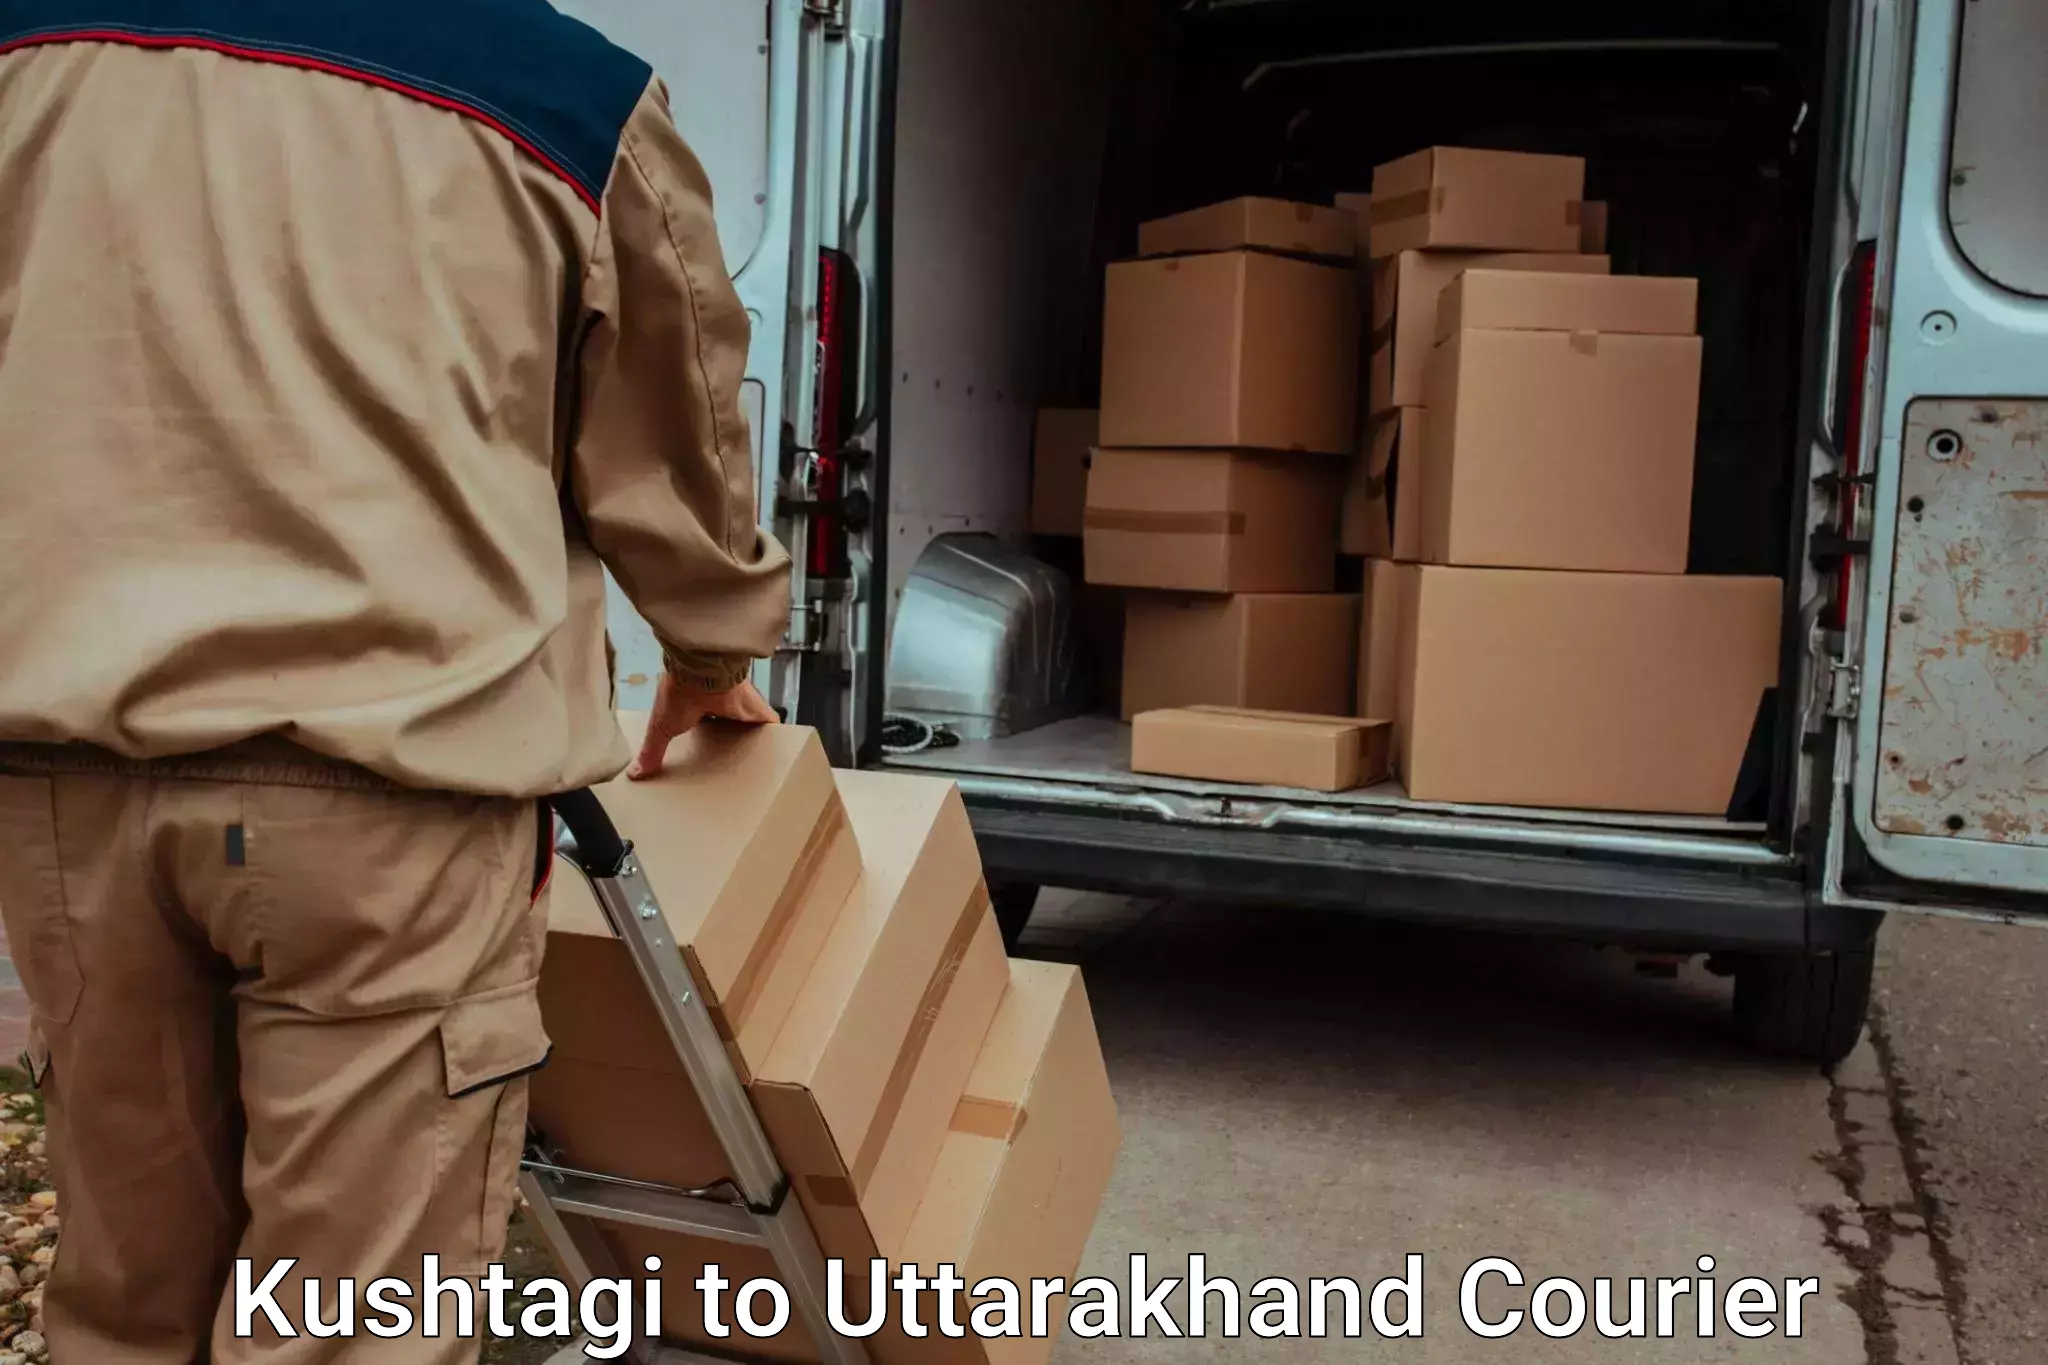 Luggage transport operations Kushtagi to Uttarakhand